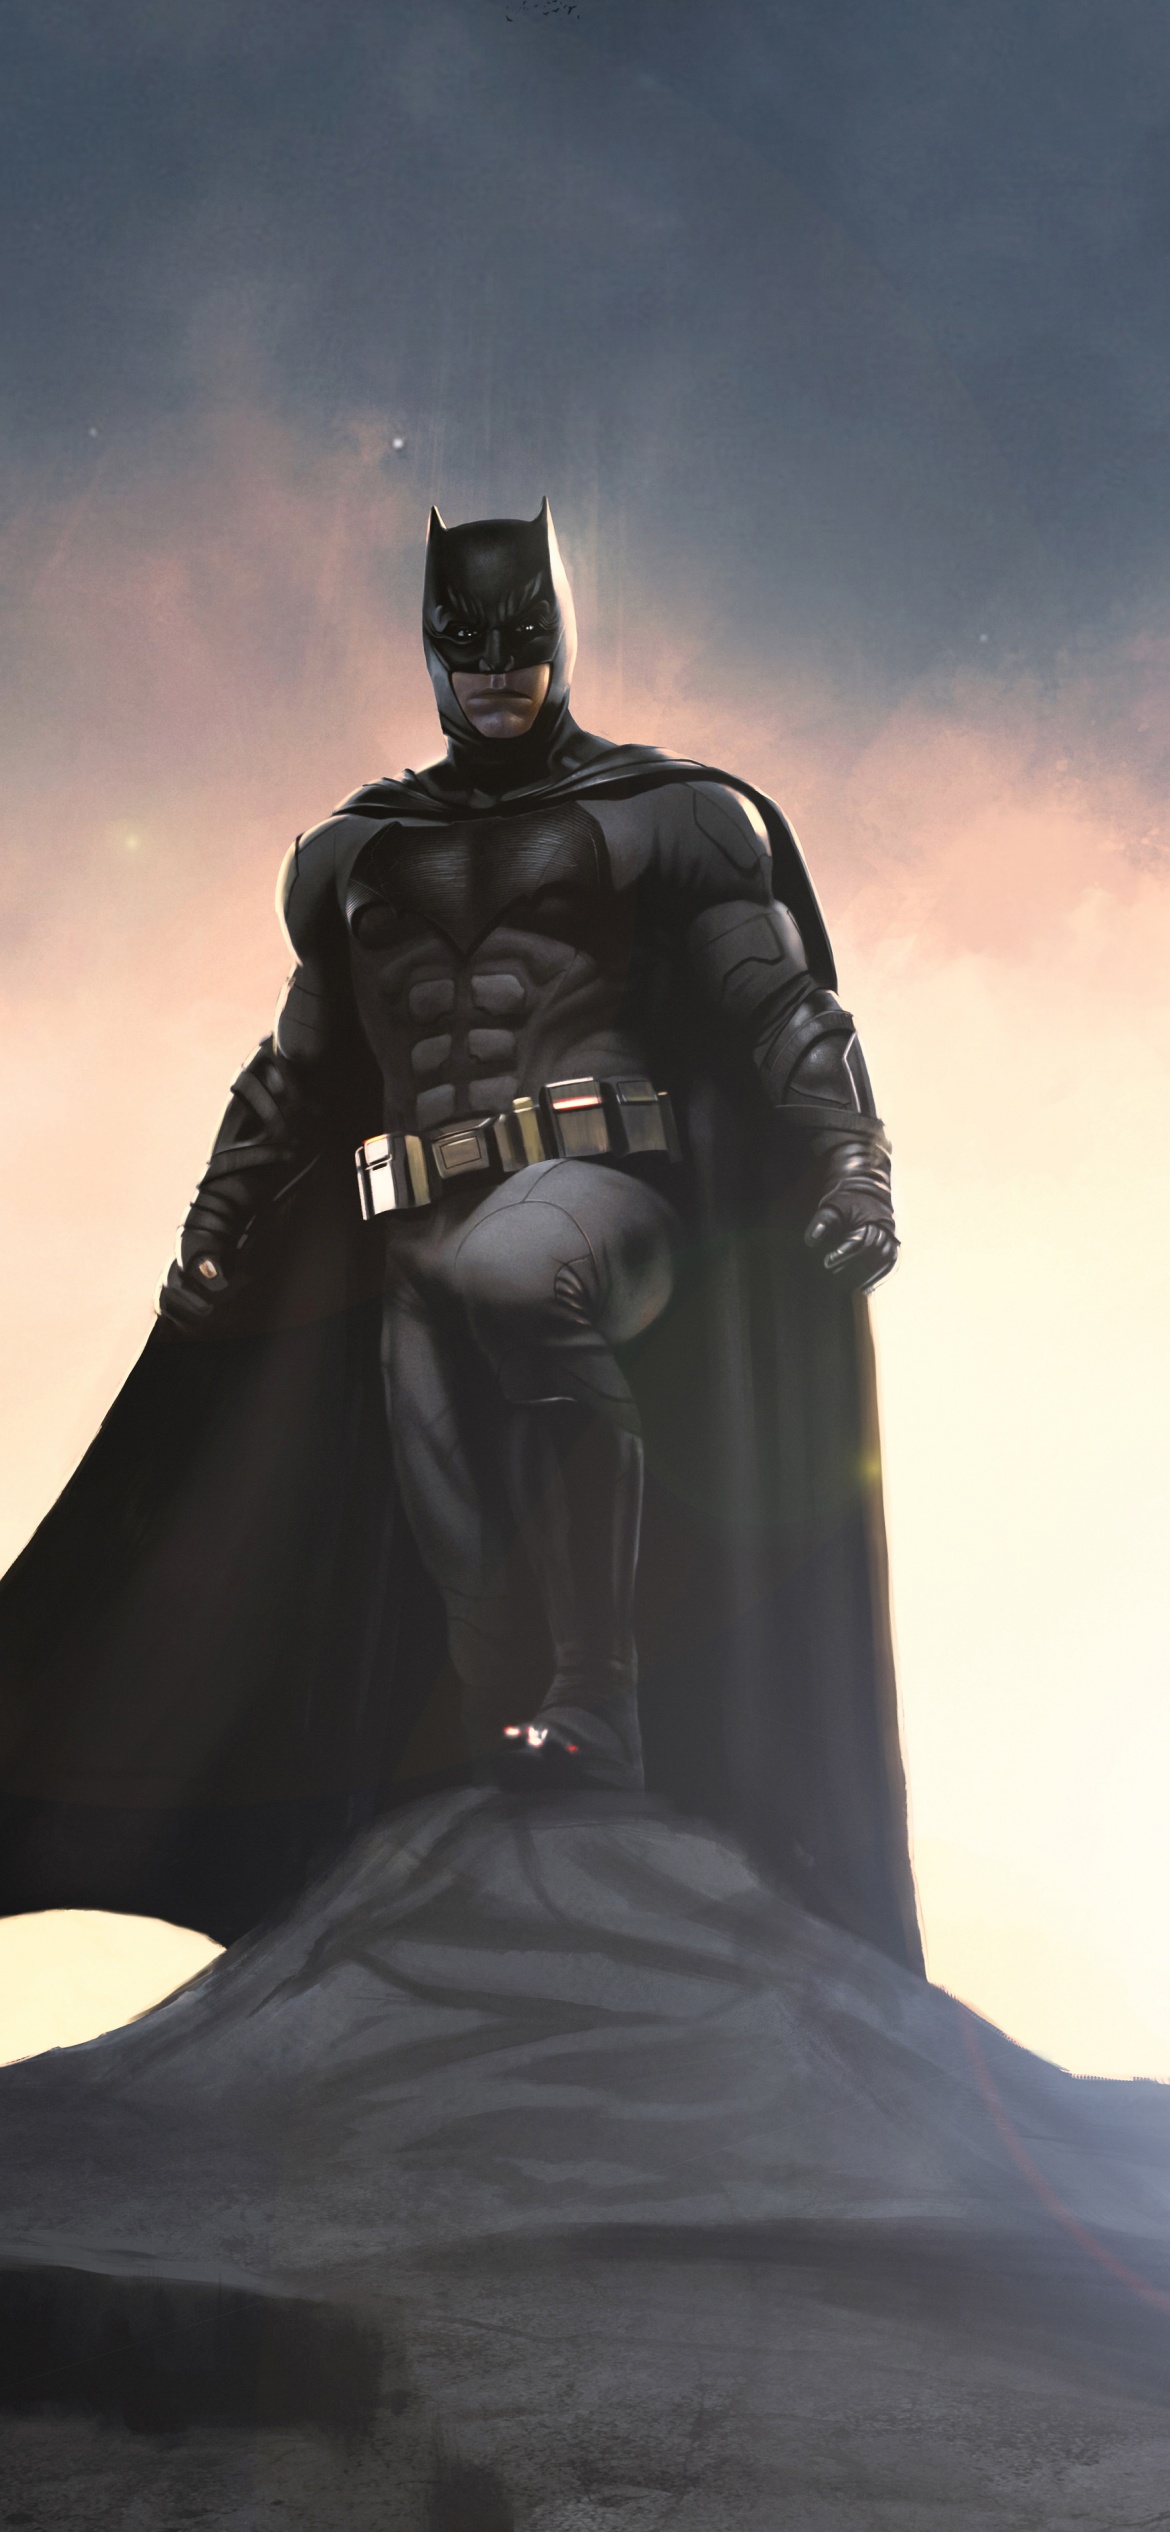 Batman Wallpaper 4K, DC Superheroes, DC Comics, 5K, Graphics CGI, #2656